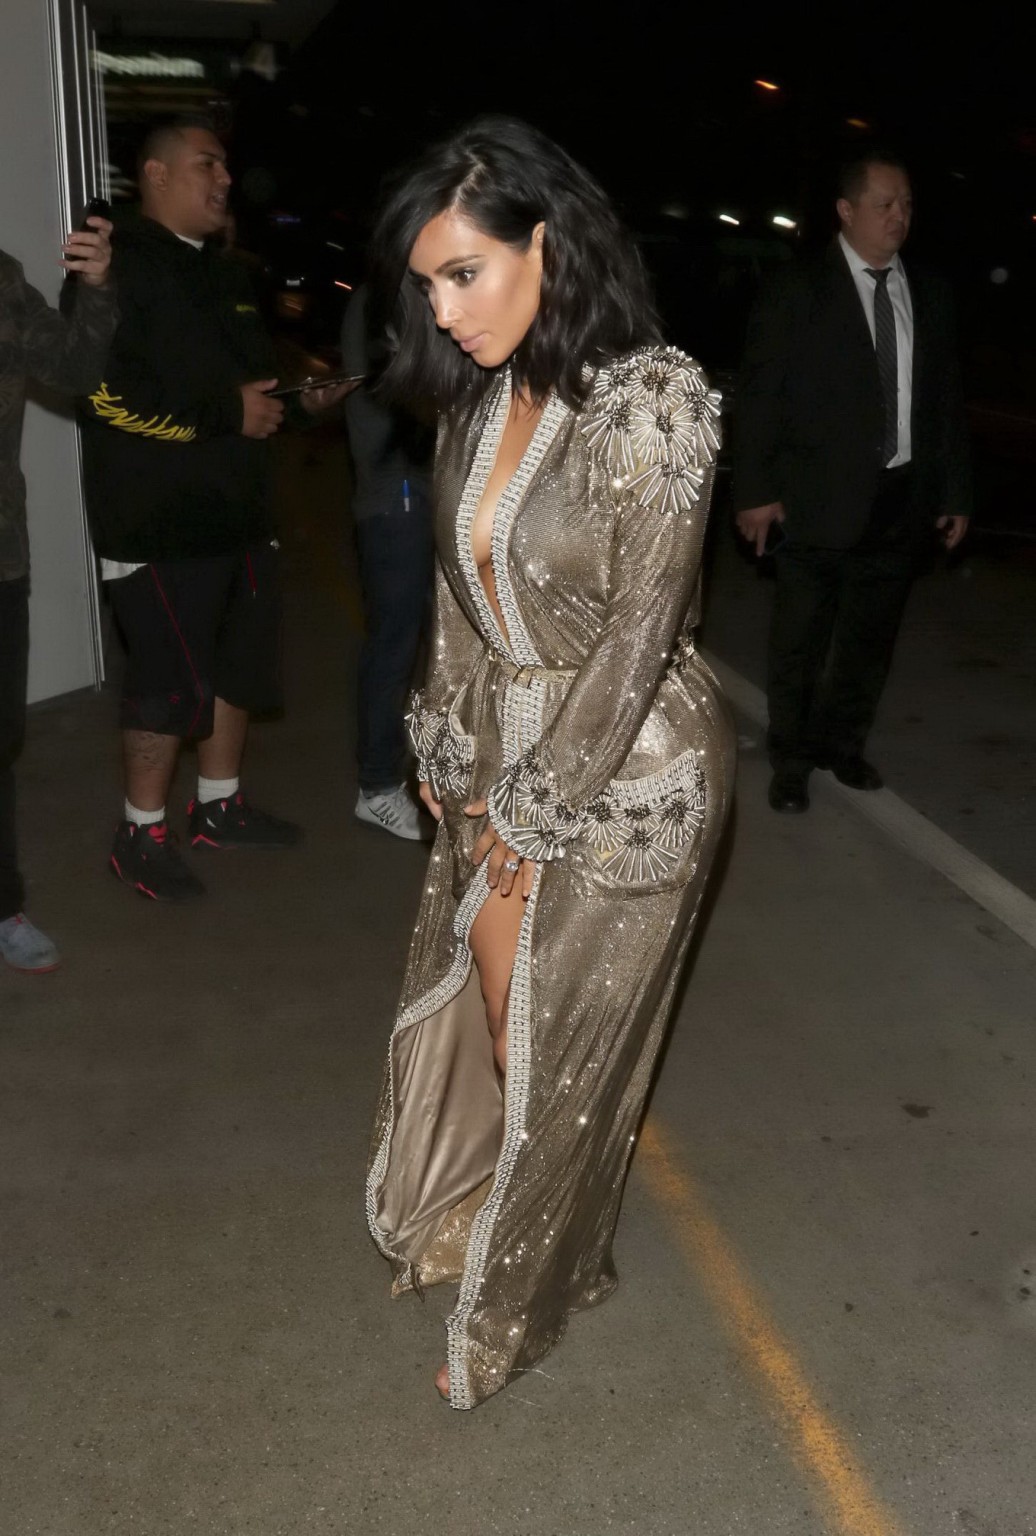 Kim Kardashian braless and pantyless in revealing golden smock arriving at 57th  #75173082